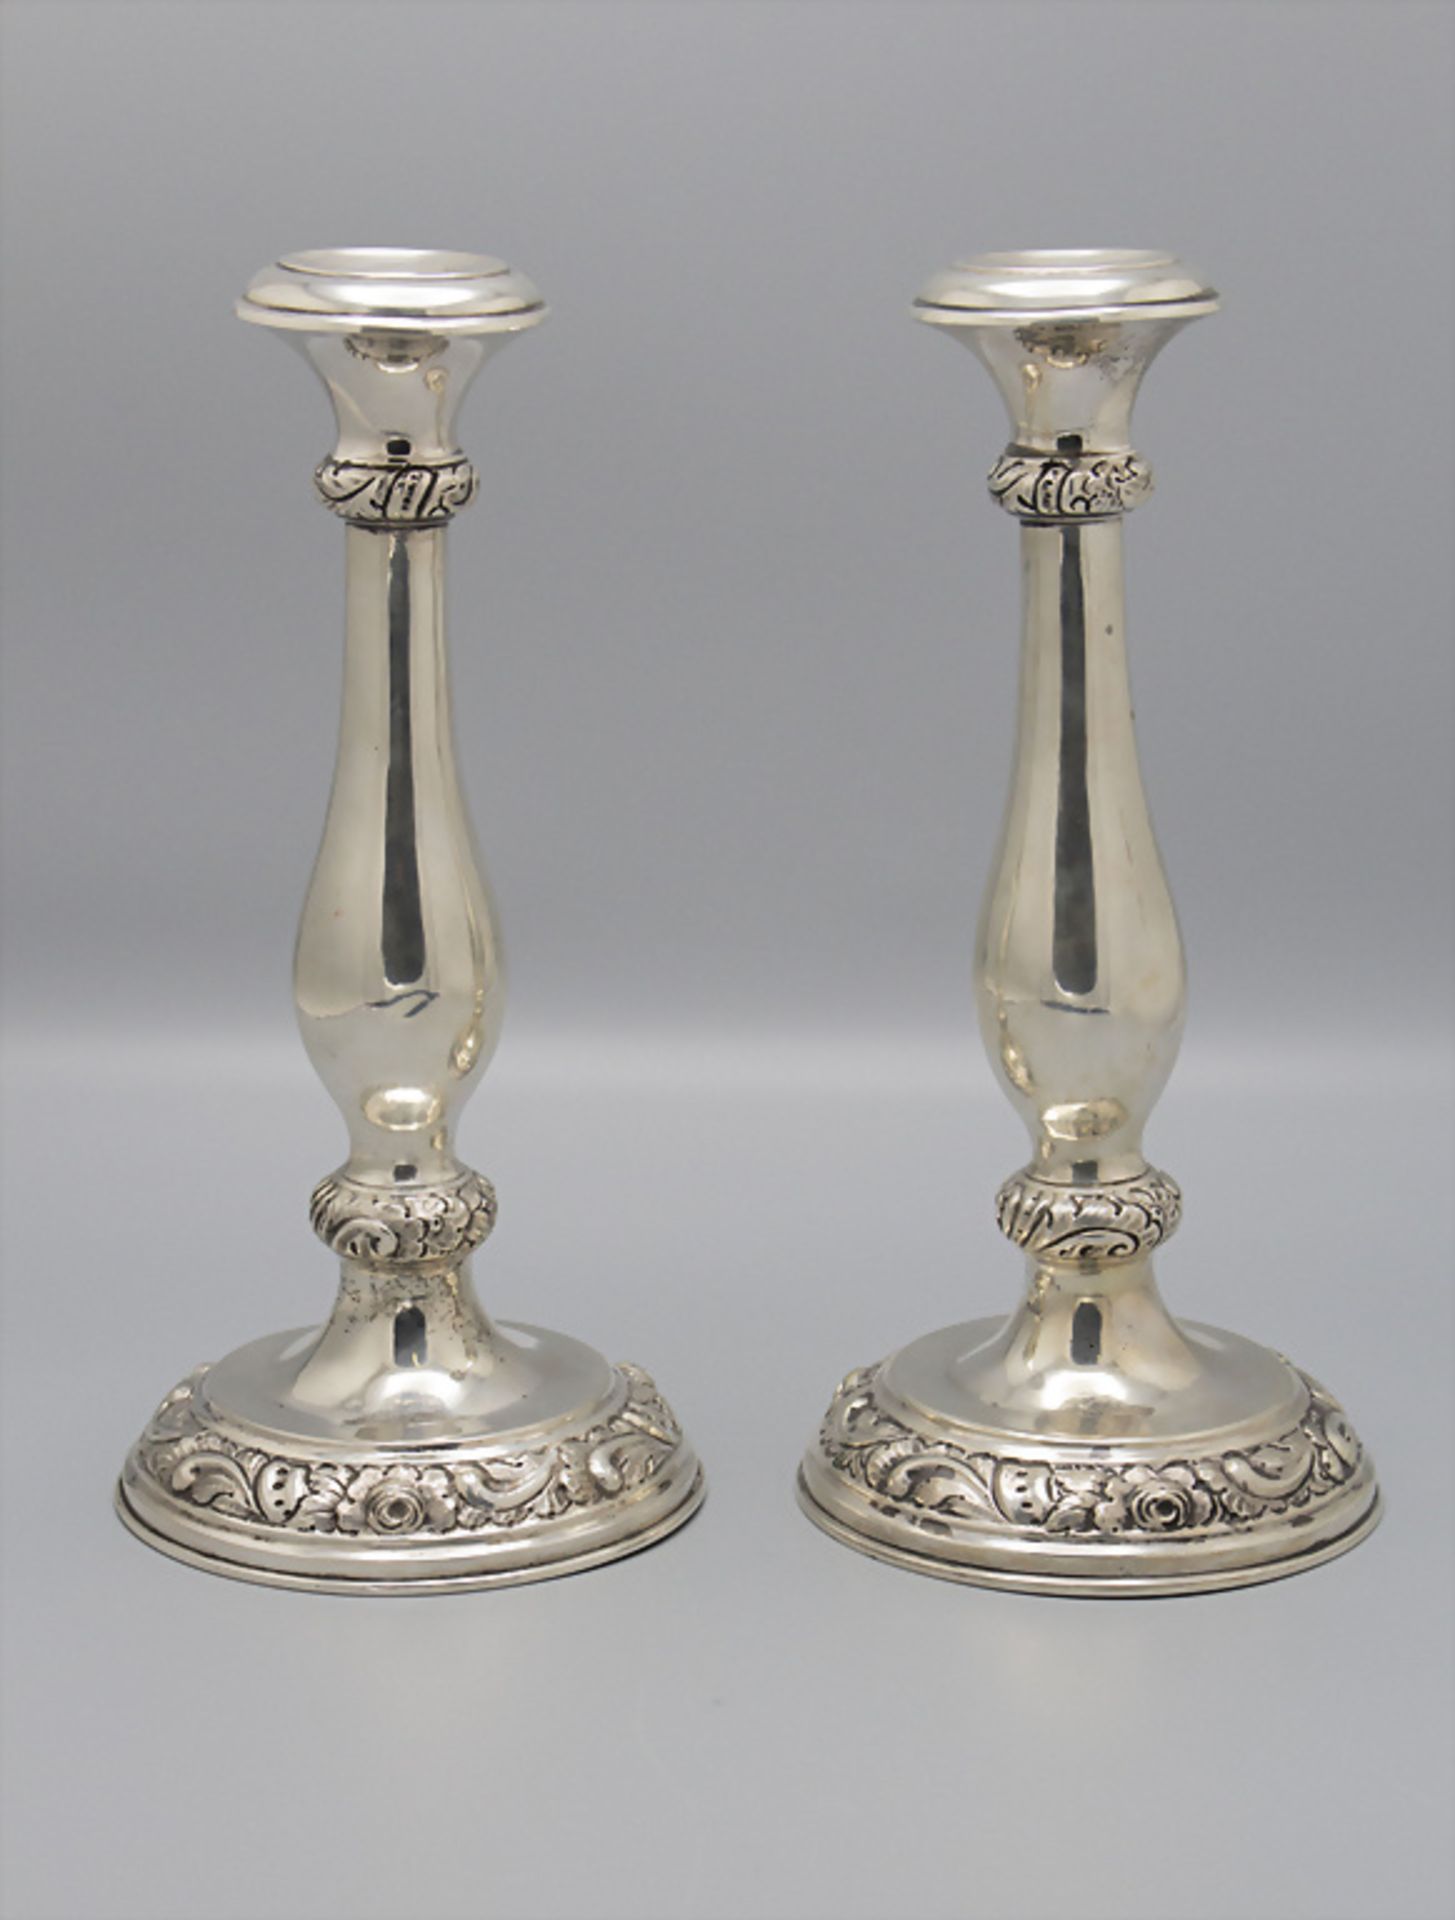 Paar Kerzenleuchter / A pair of silver candlesticks, Gottlieb Kundtner, Pozsony/Bratislava, 1860